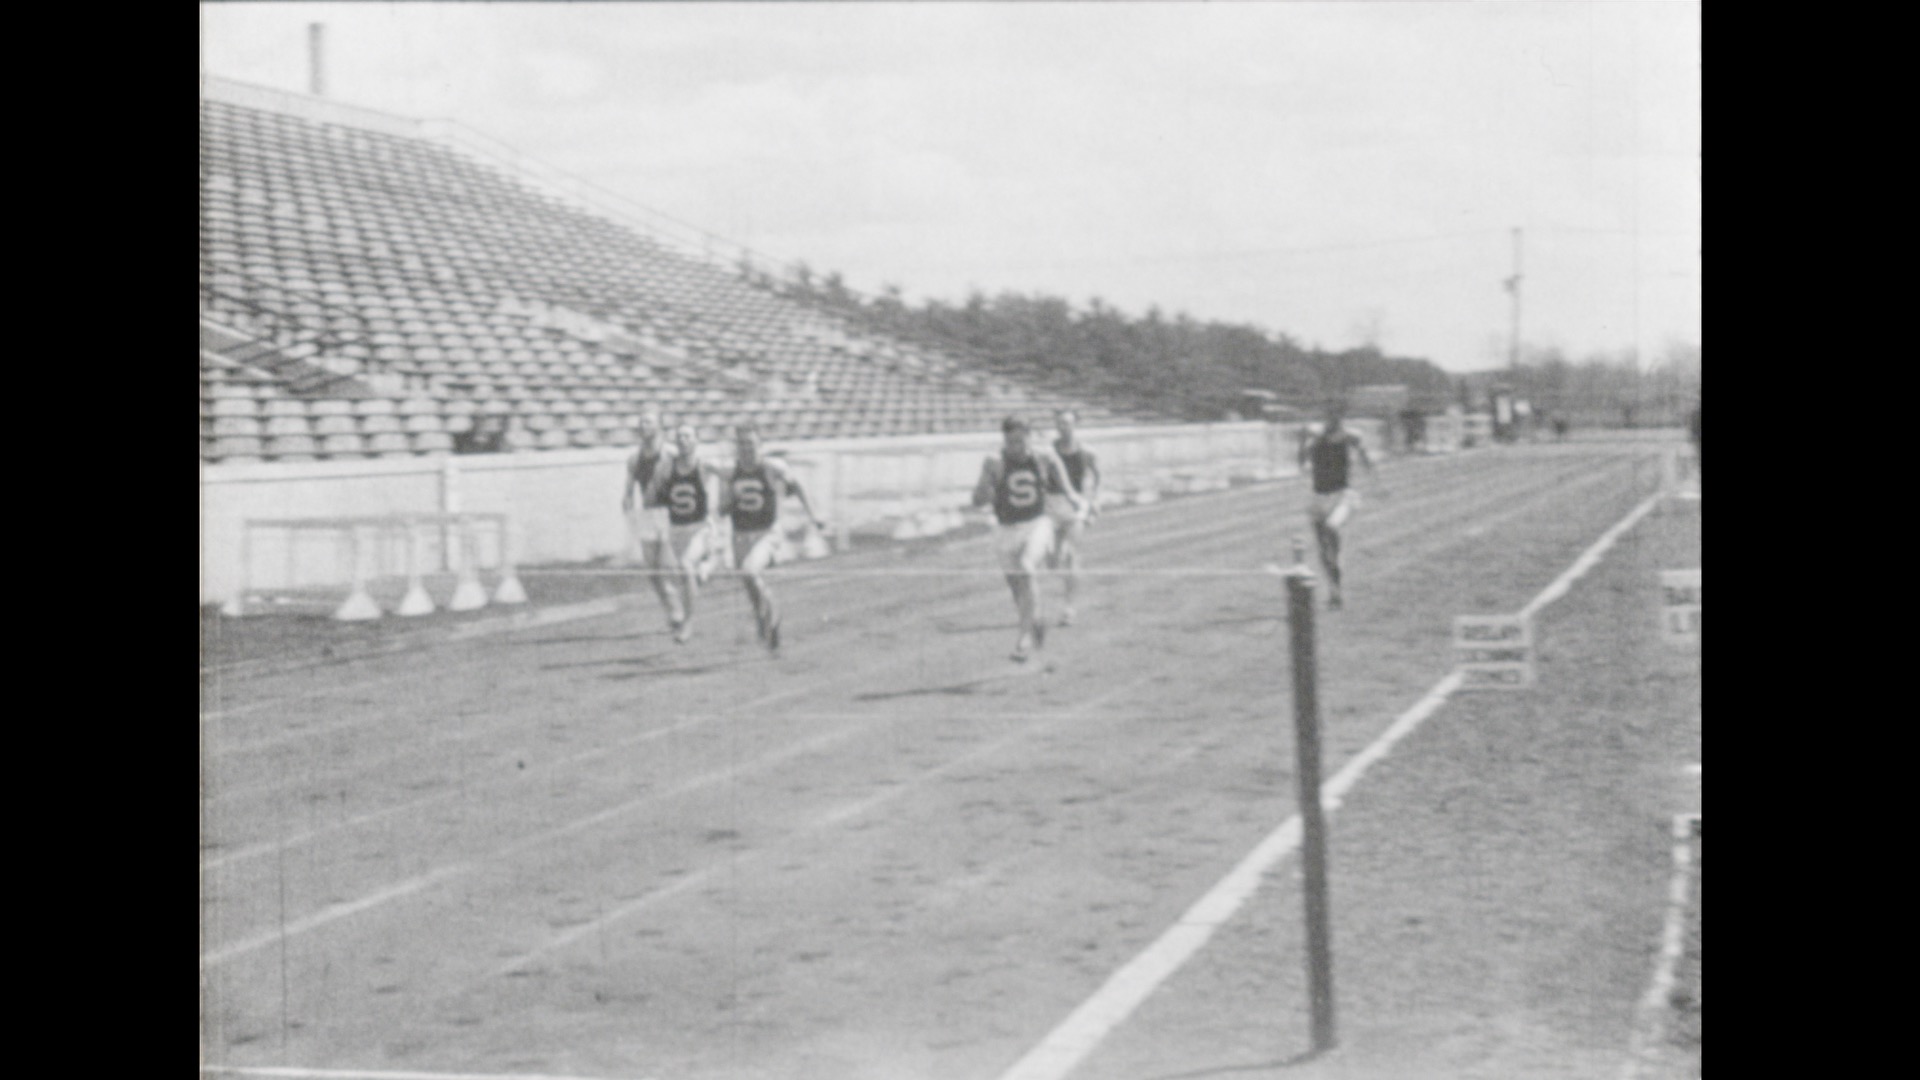 REO Reel #11: MSC Track, 1928